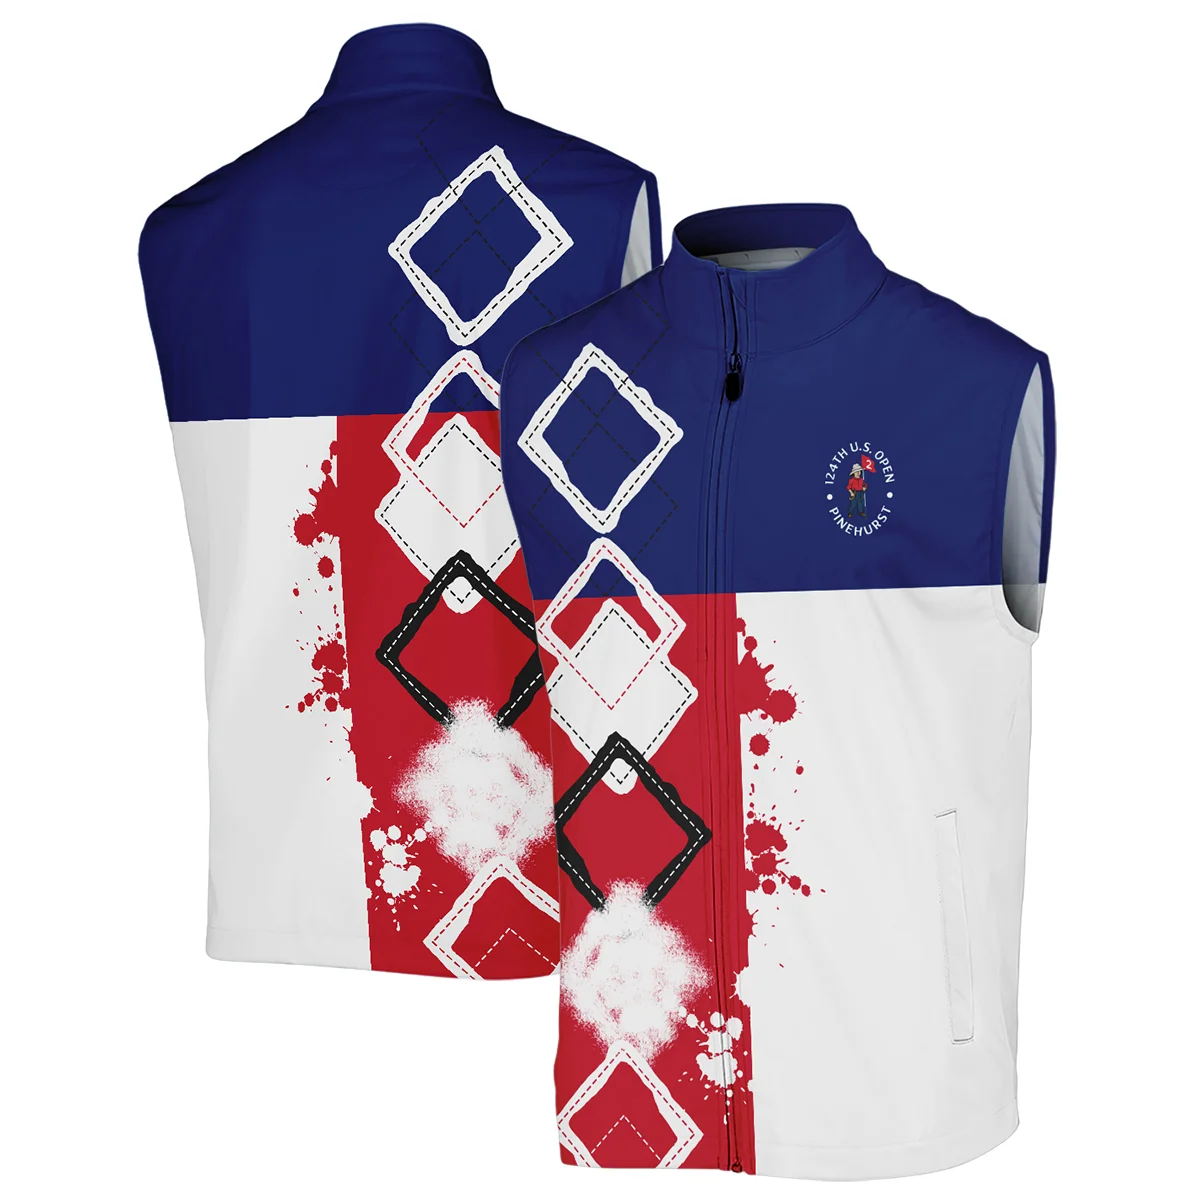 124th U.S. Open Pinehurst Titleist Bomber Jacket Blue Red White Pattern Grunge All Over Print Bomber Jacket